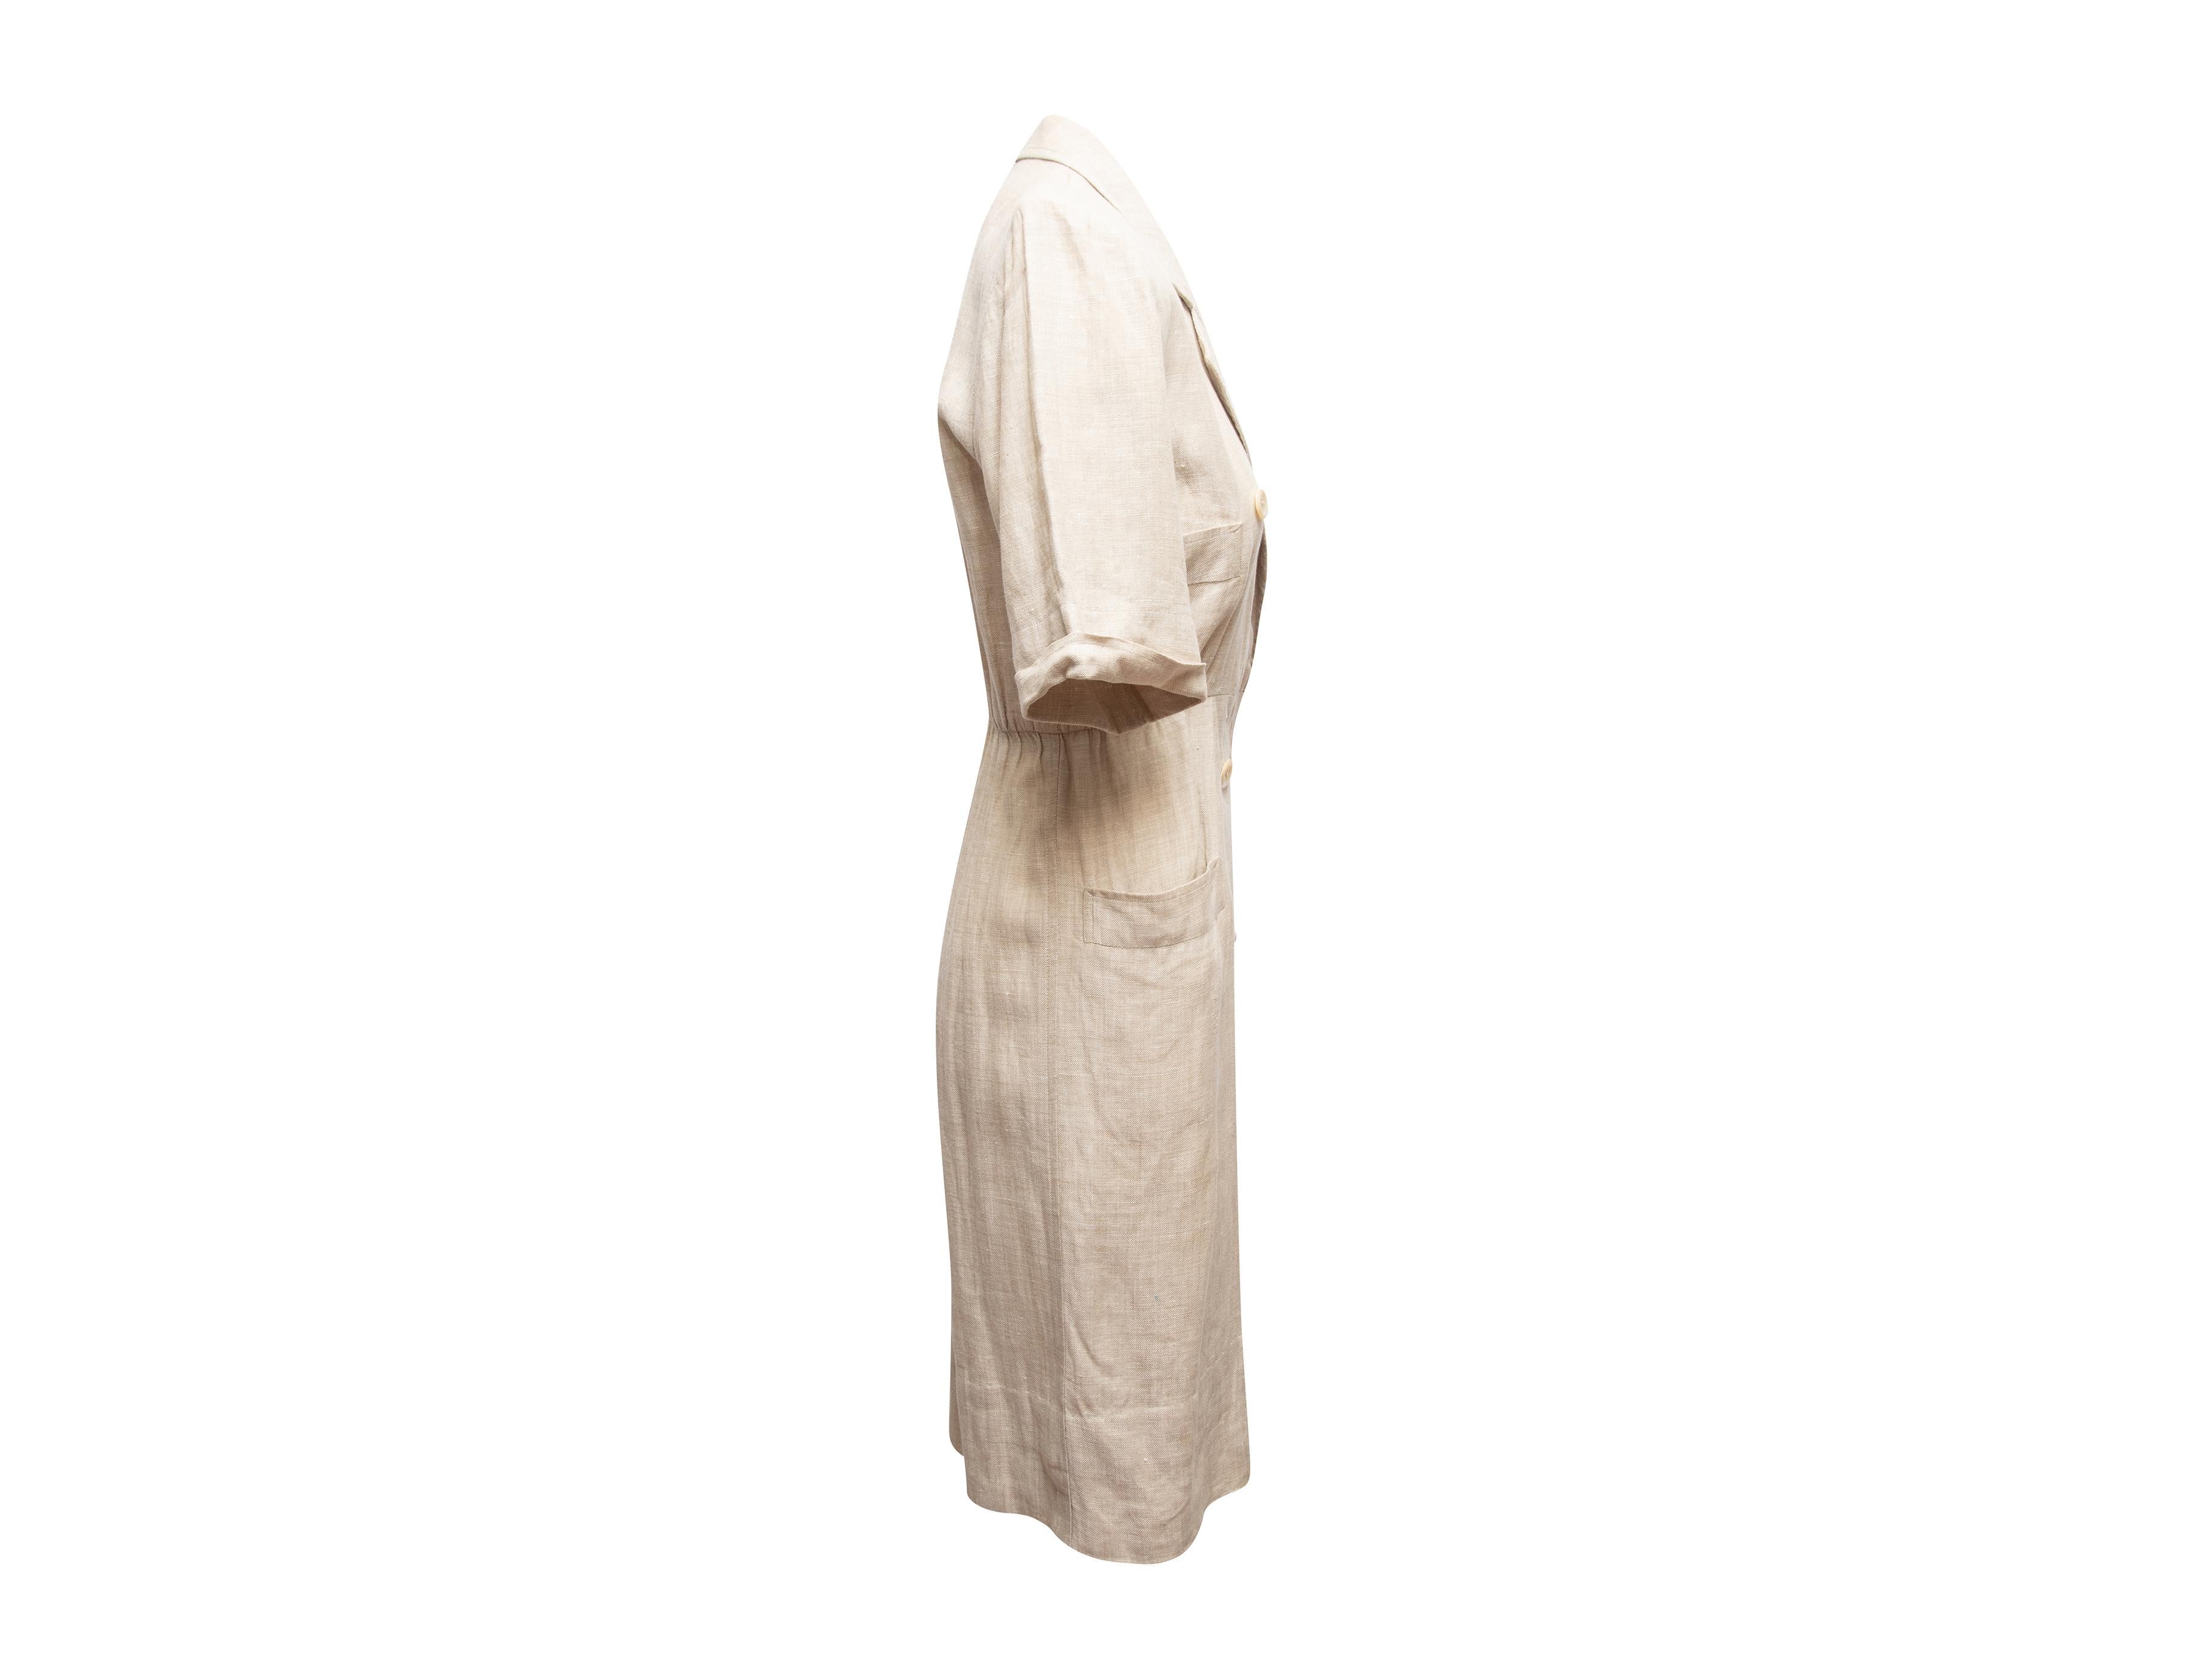 Beigefarbenes zweireihiges Leinenkleid von Yves Saint Laurent Variation. Ca. 1990er Jahre. Gekerbter Kragen. Kurze Ärmel. Vier aufgesetzte Taschen. Knopfverschlüsse vorne. Designer Größe 36. 34